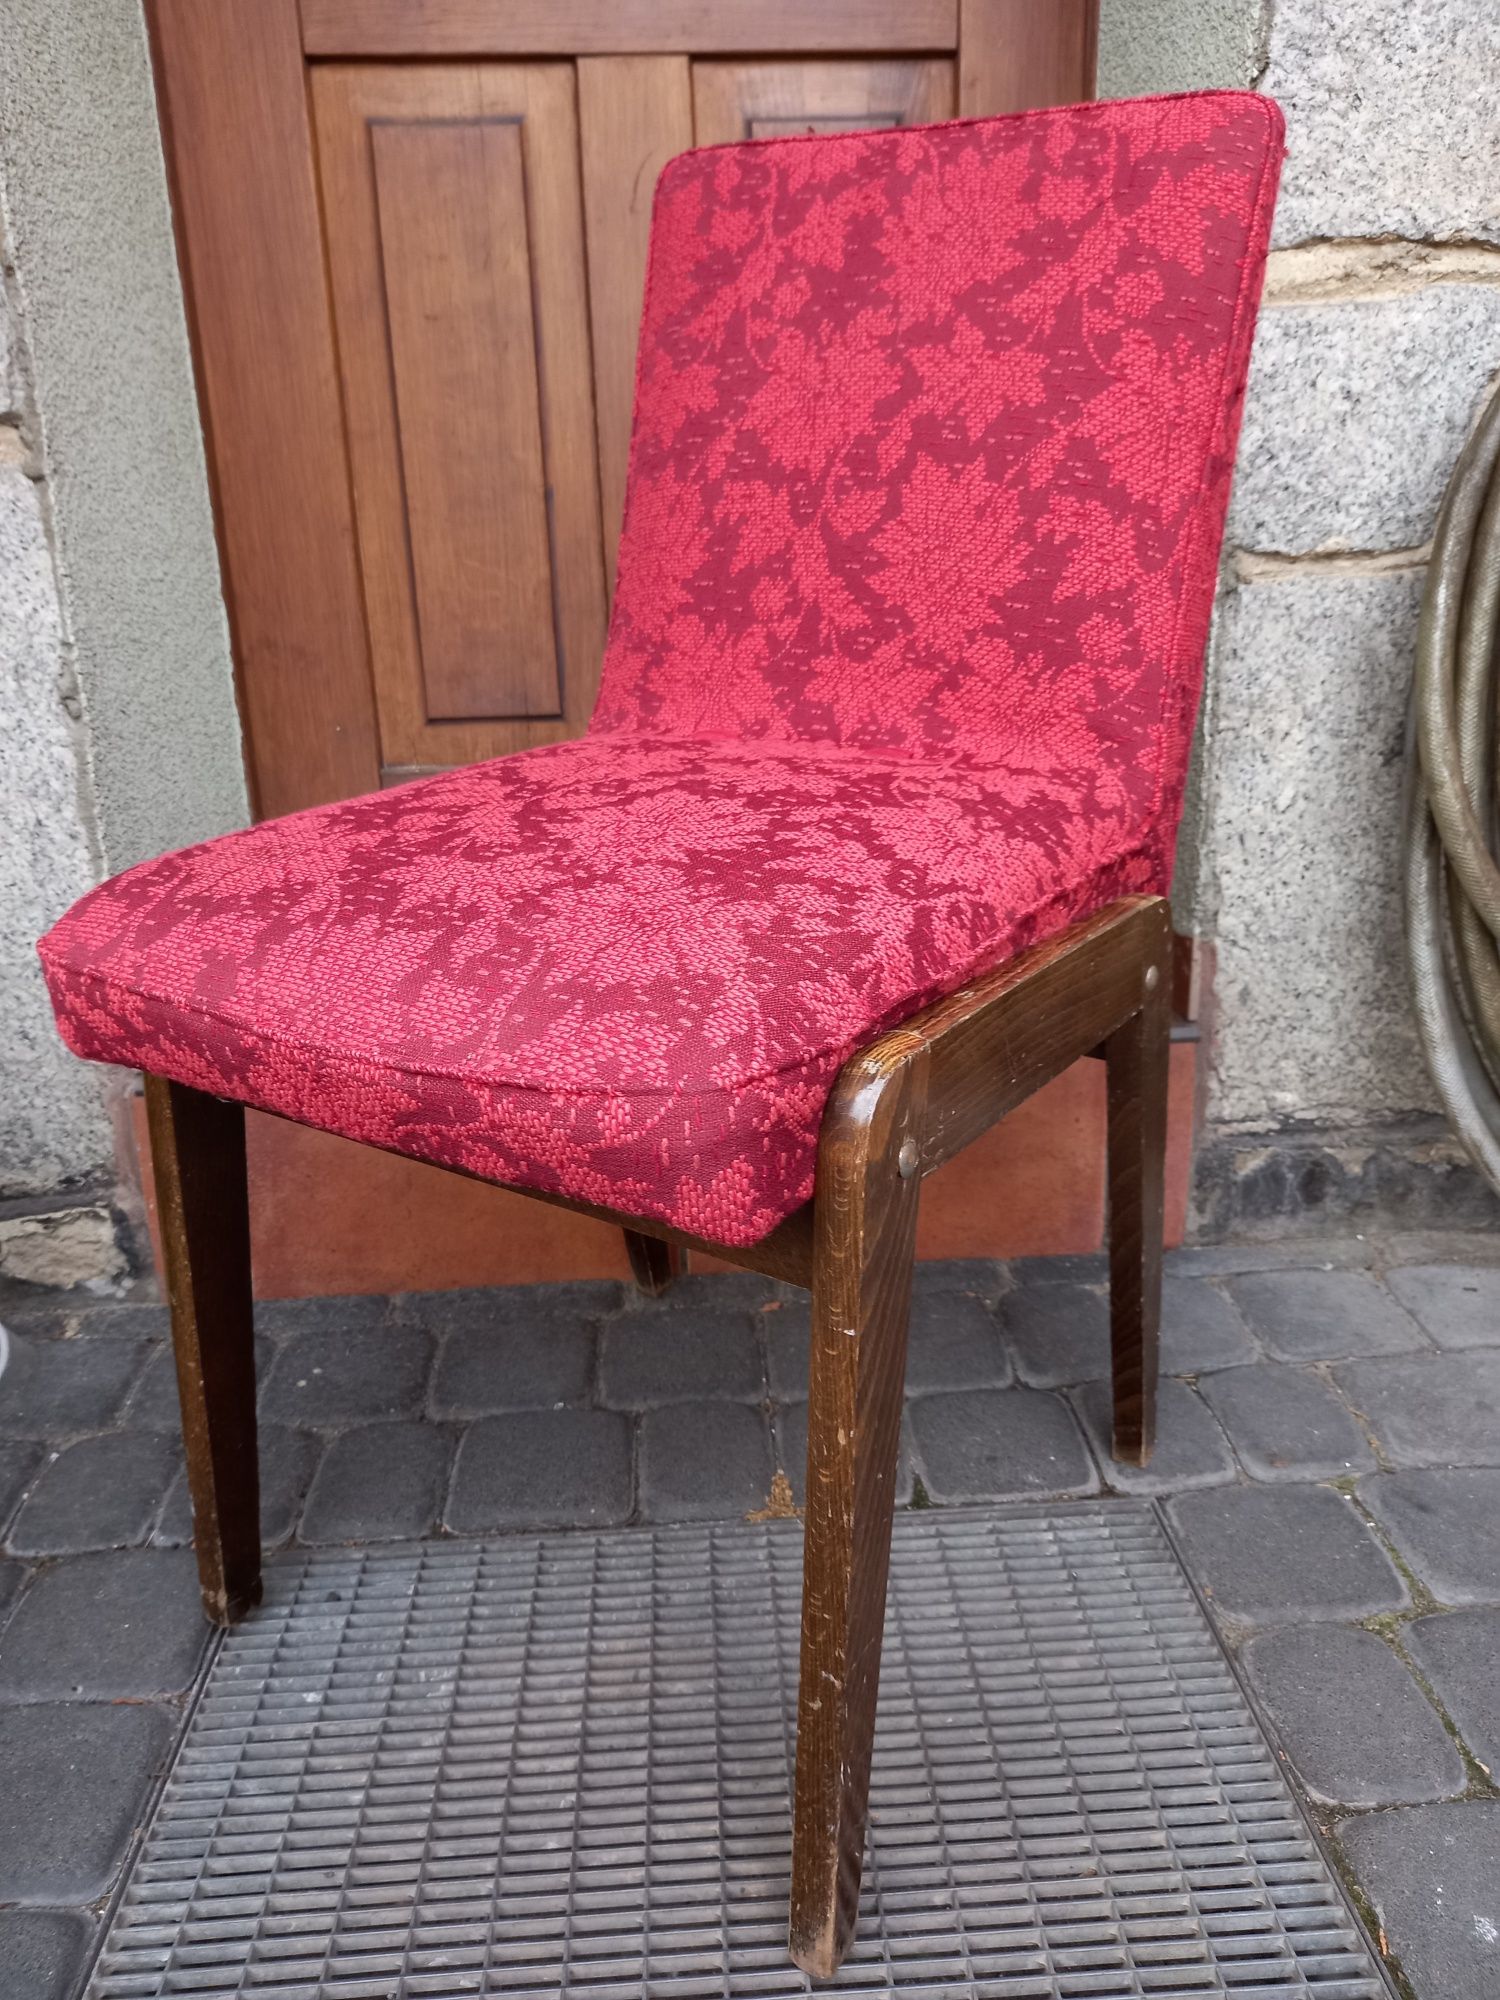 Stare krzesło Aga prl vintage